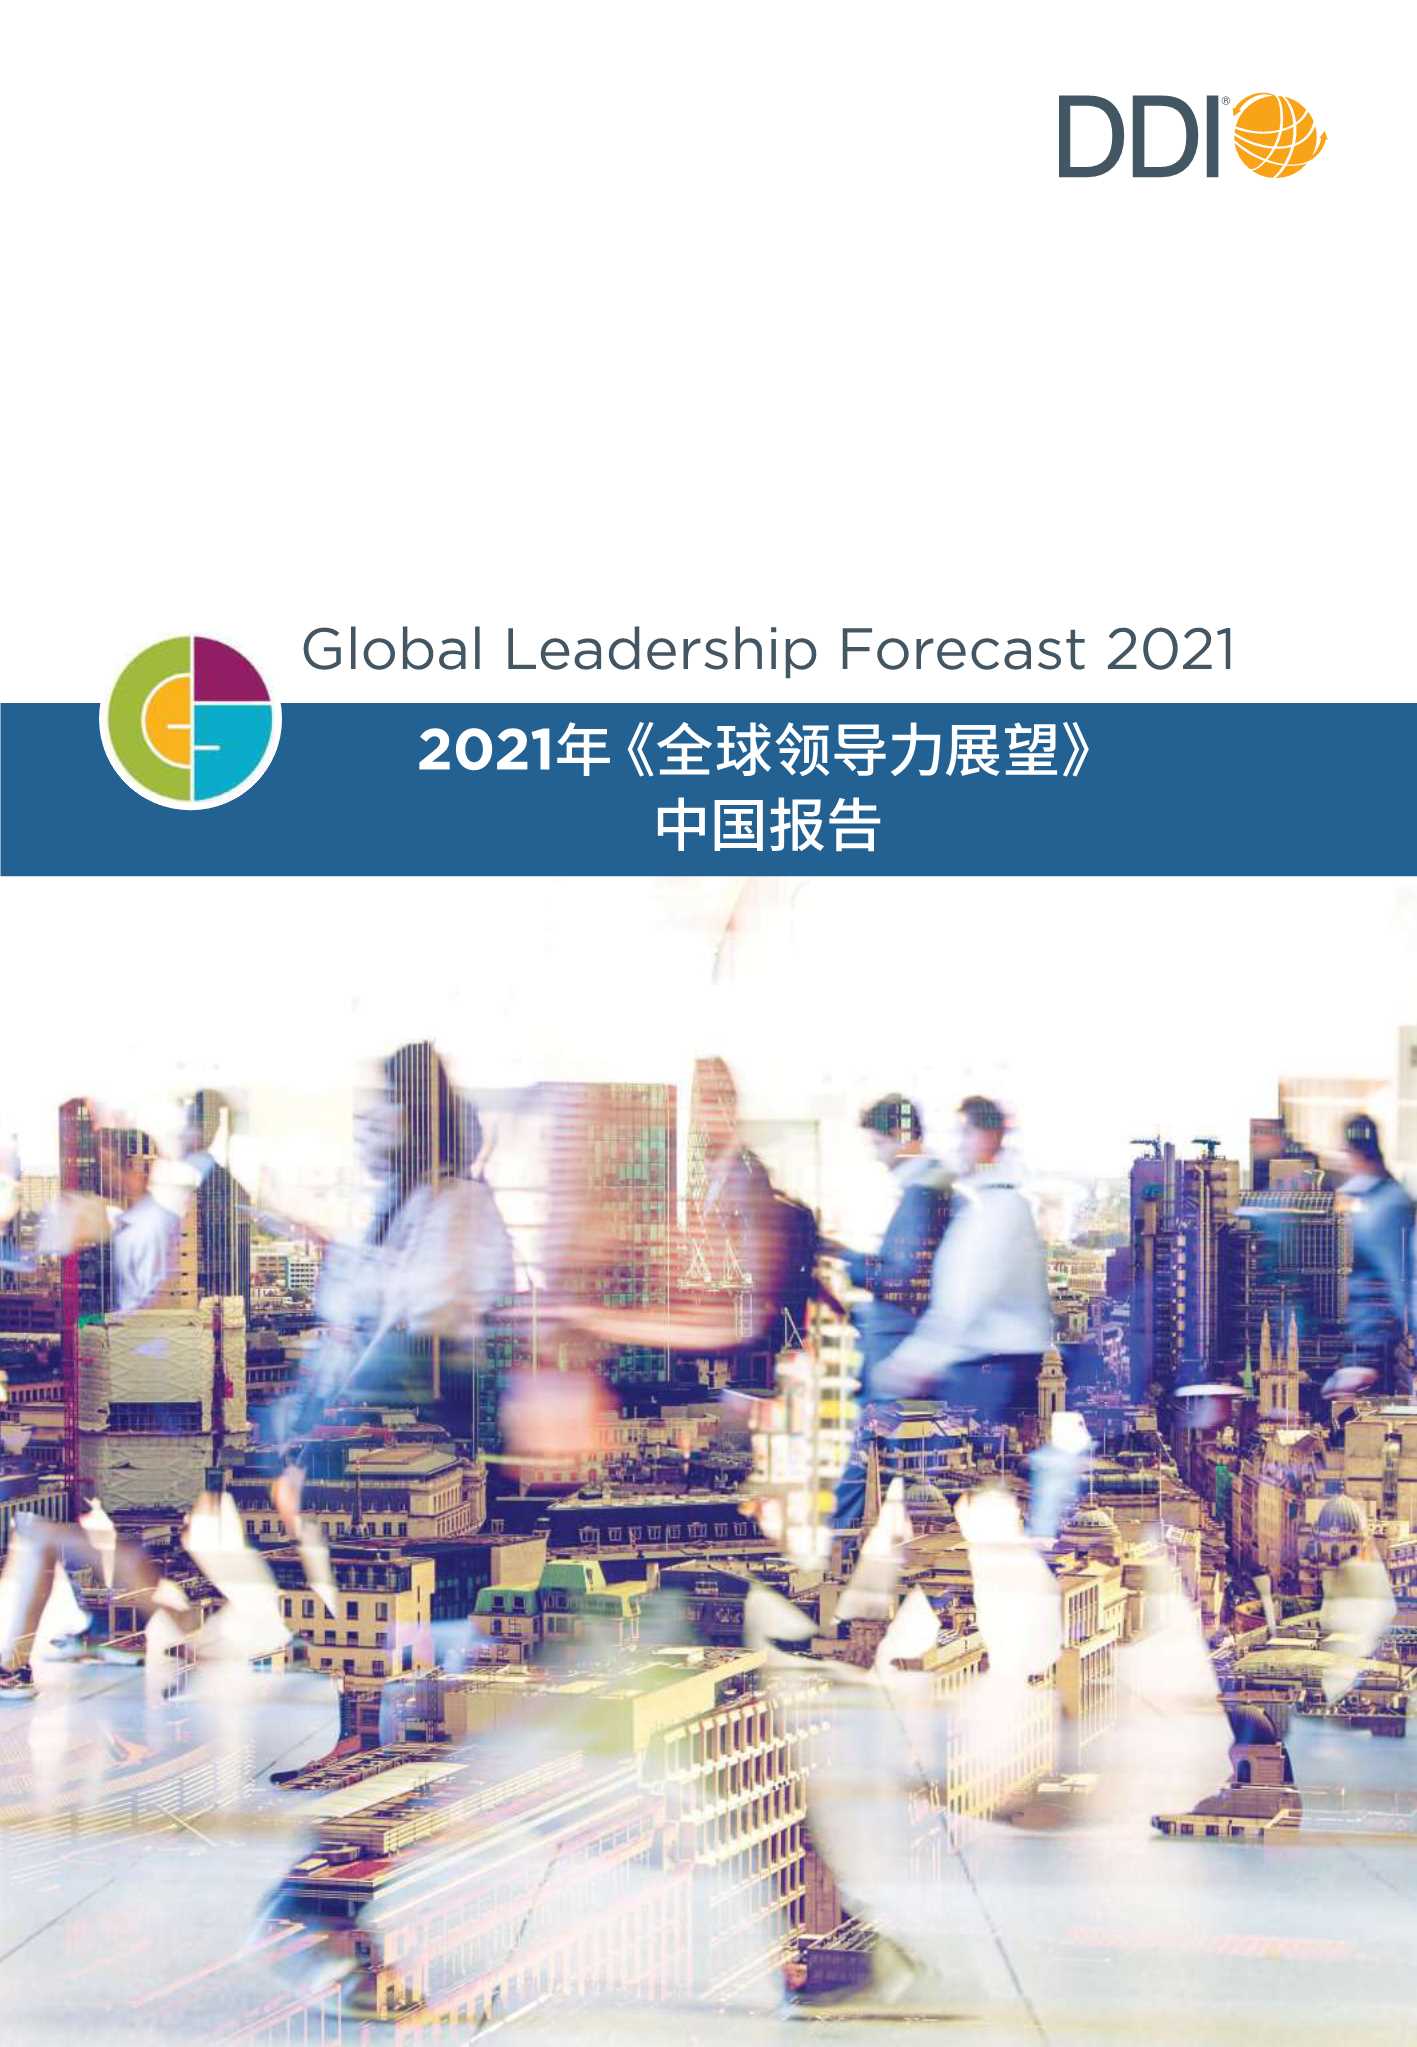 DDI智睿咨询-2021全球领导力展望中国报告-2021.08-64页